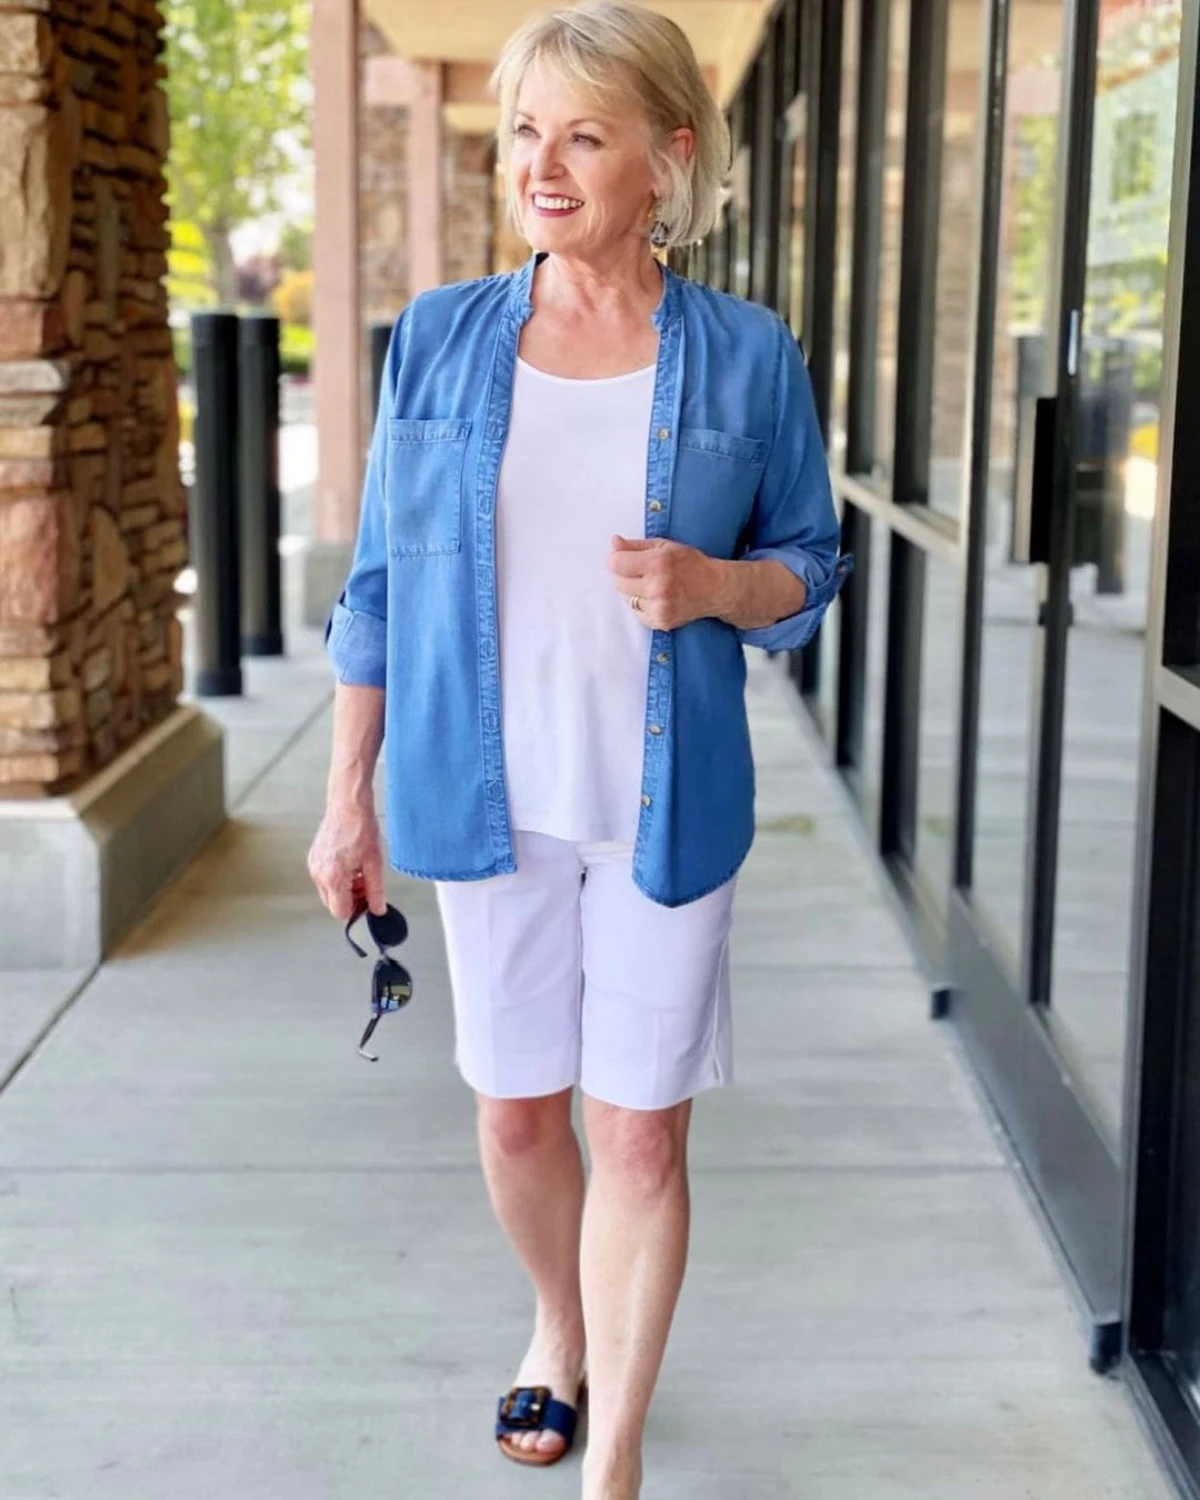 comment porter un bermuda blanc mode femme 60 ans